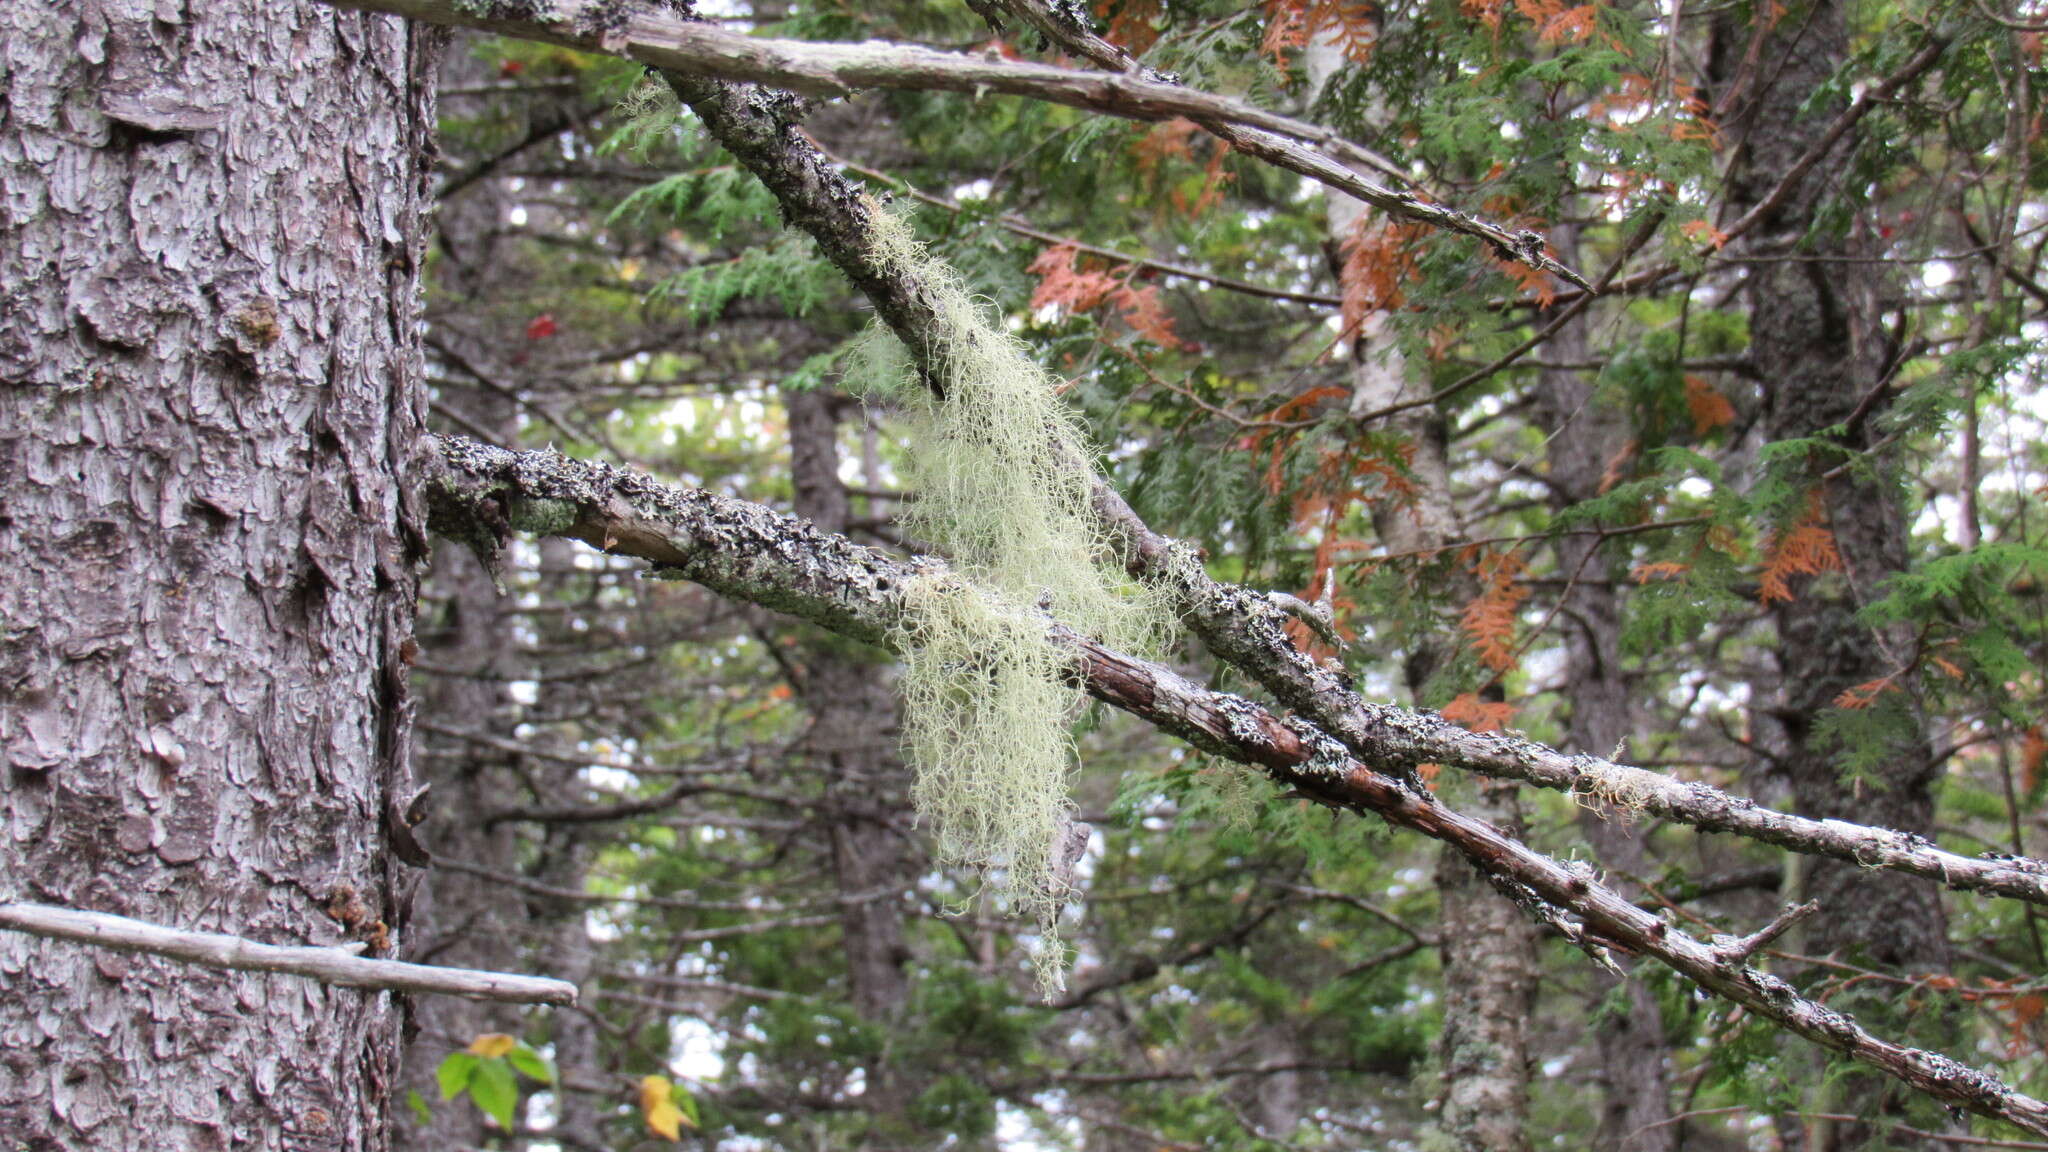 Image of Nadvornik's horsehair lichen